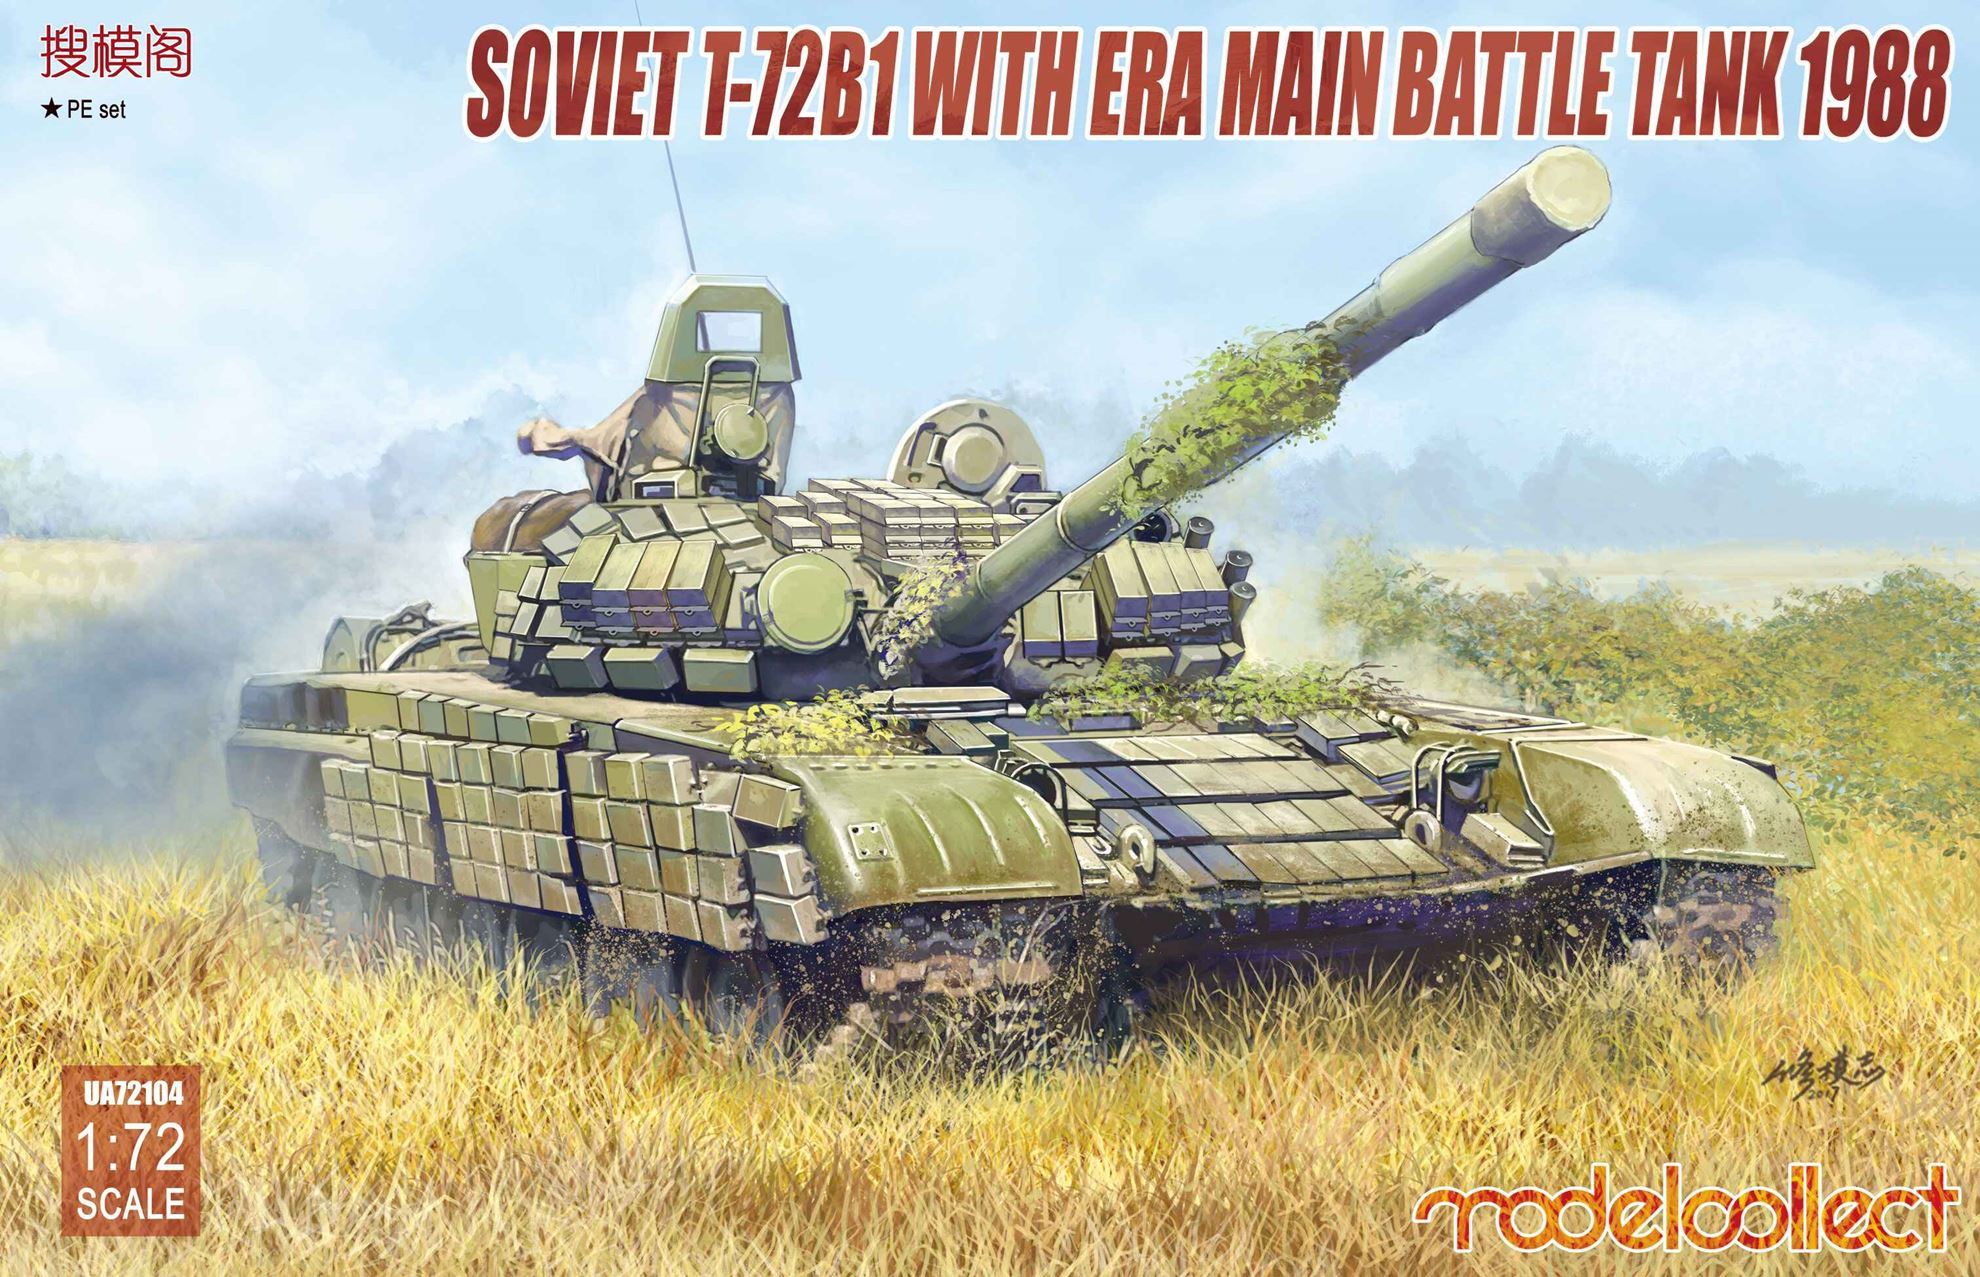 Soviet T-72B1 with ERA Main Battle Tank 1988